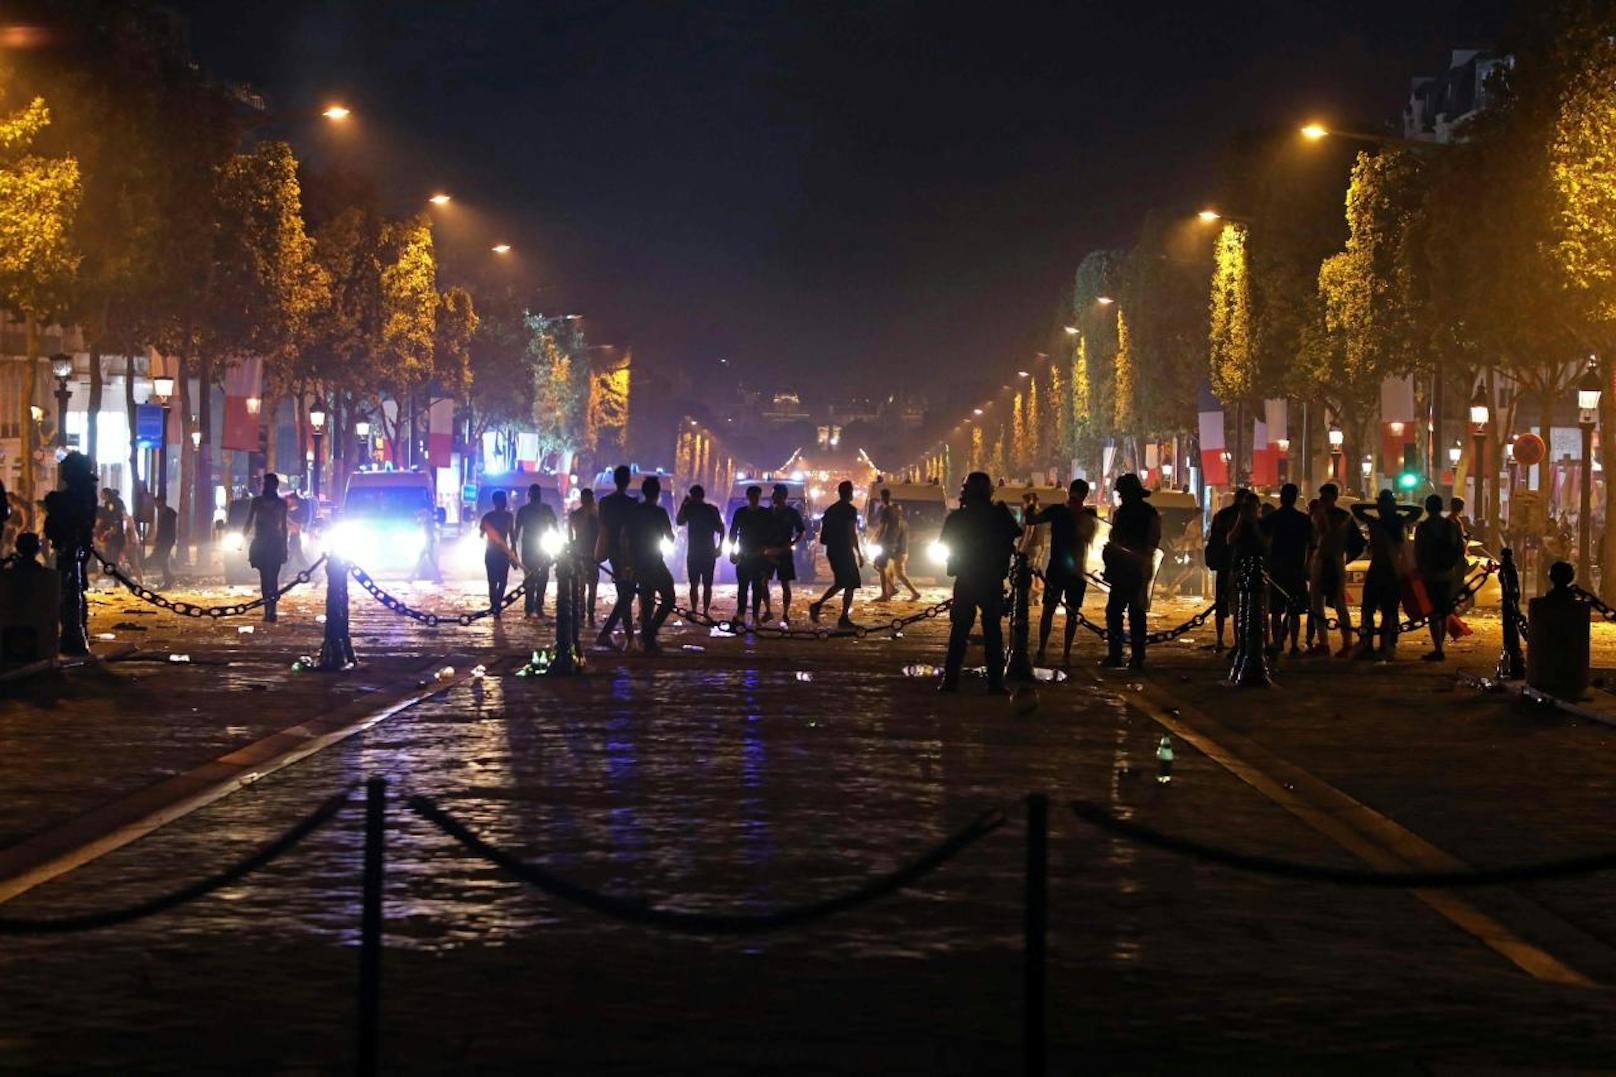 Nach dem Sieg im WM-Finale feierten in Frankreich die Fans auf den Straßen. Dabei kam es auch zu Ausschreitungen. Die Polizei rückte mit Wasserwerfern an. Es gab mehrere Verletzte und sogar Tote.